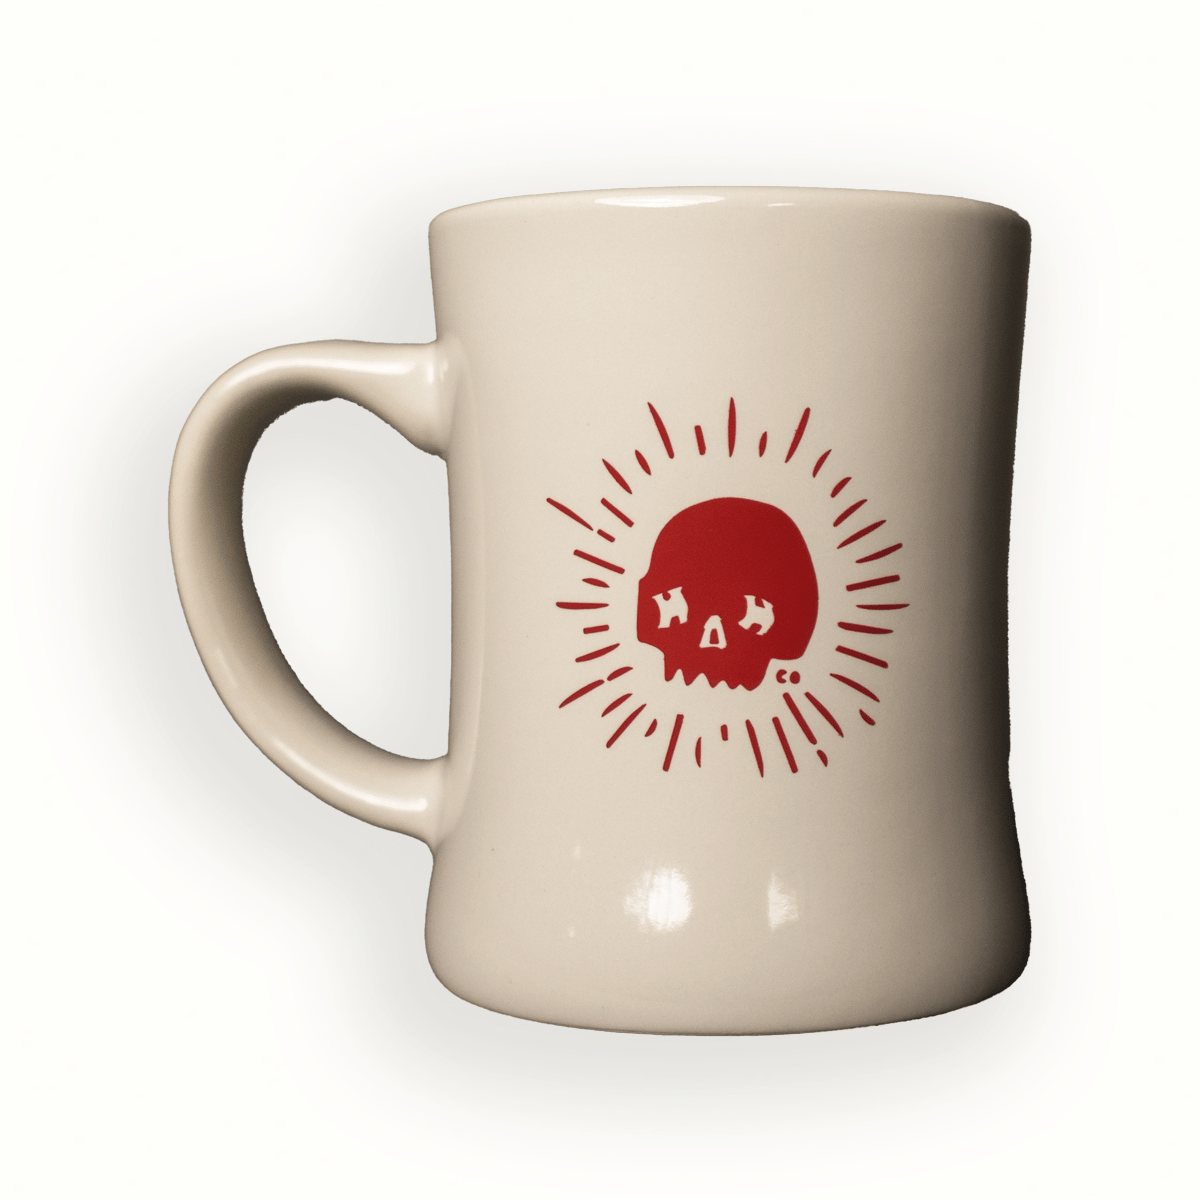 Your favorite diner mug